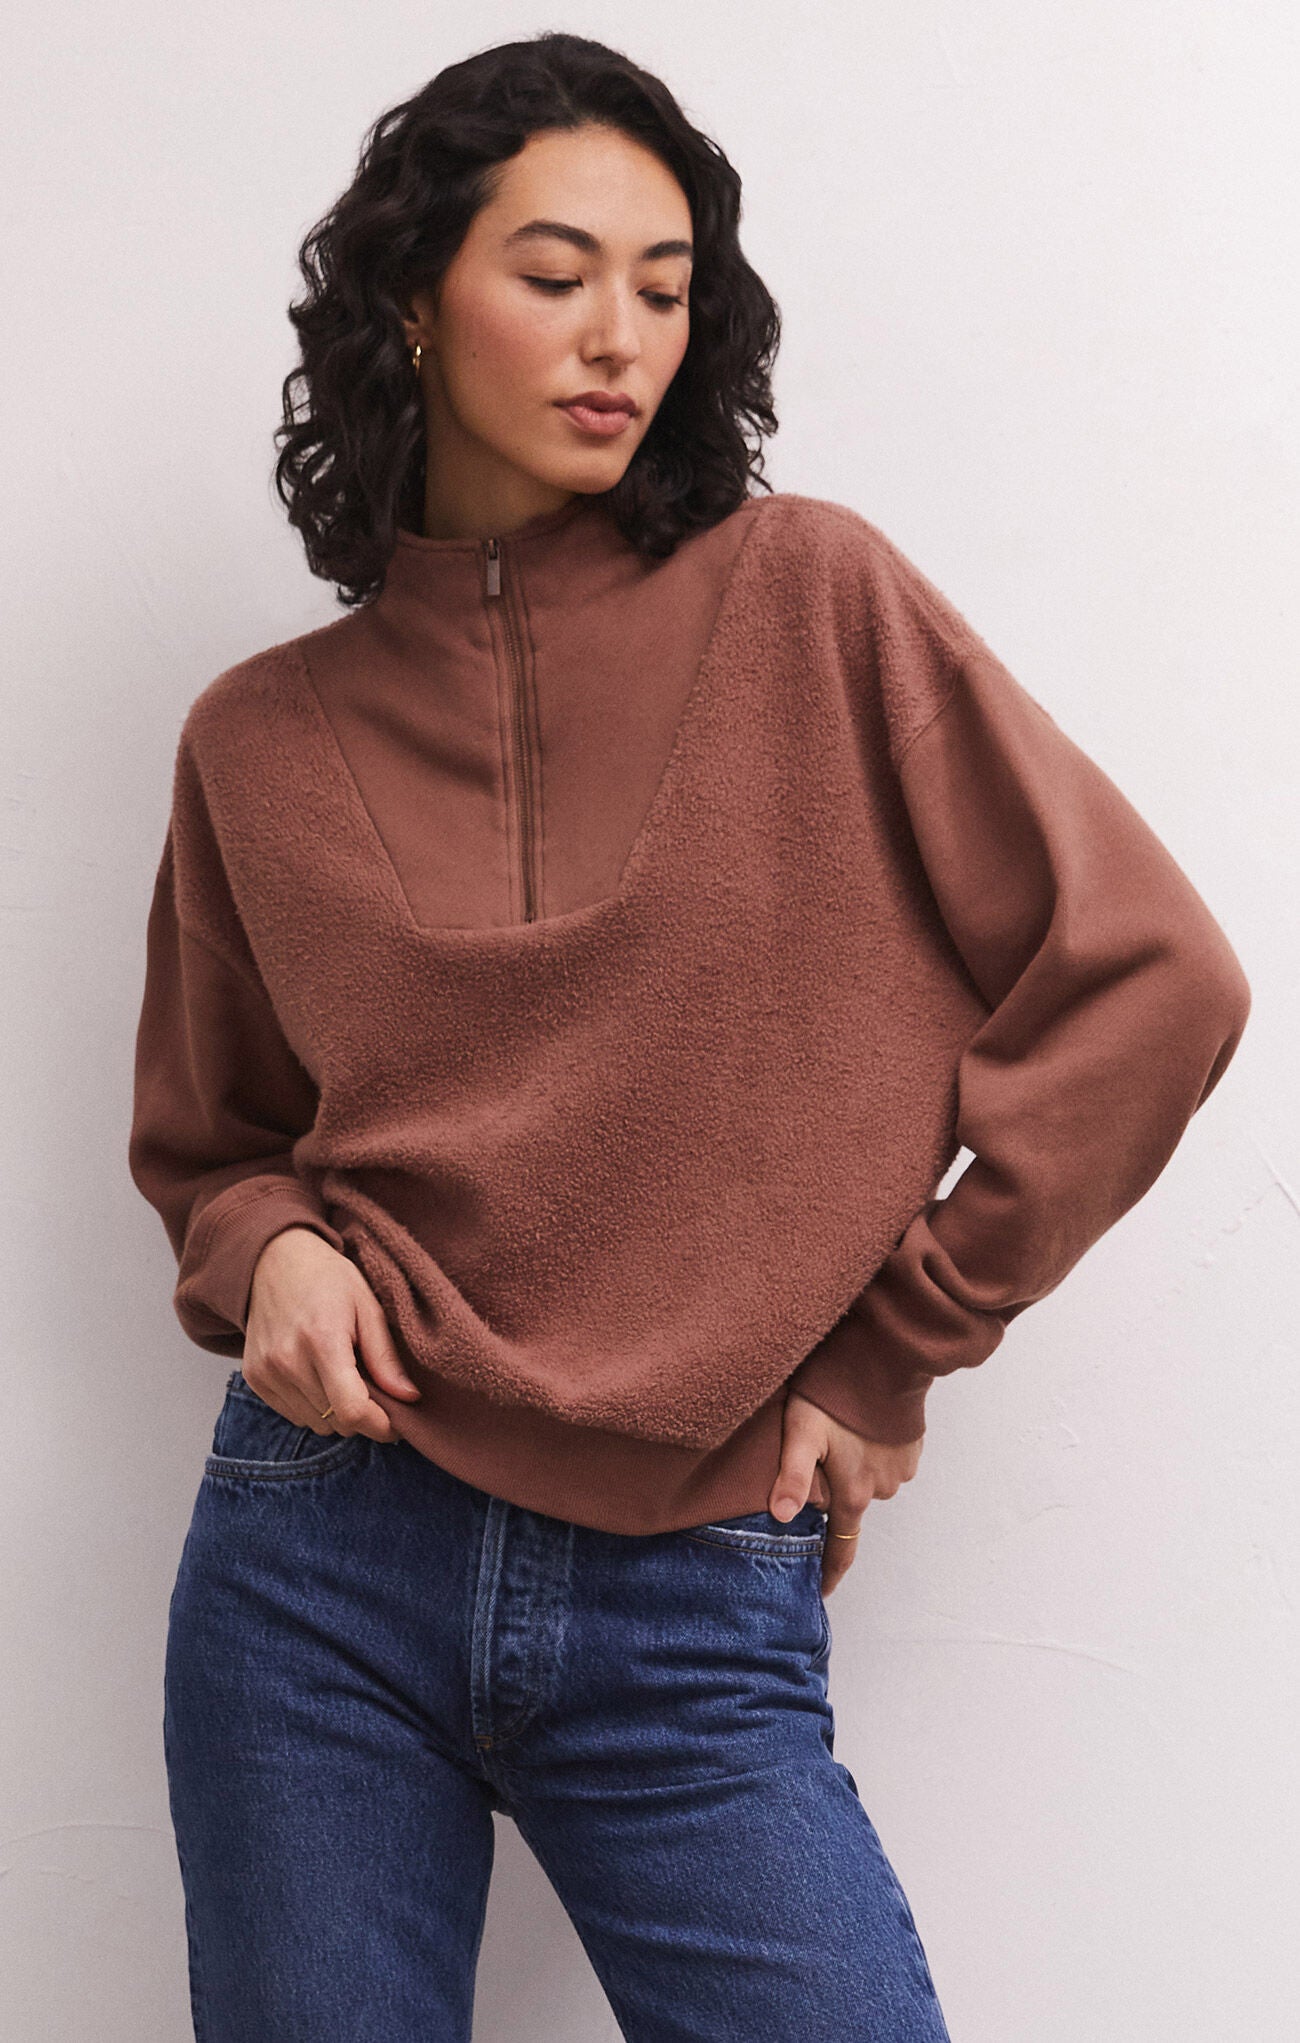 Z Supply: Sequoia Fleece Sweatshirt